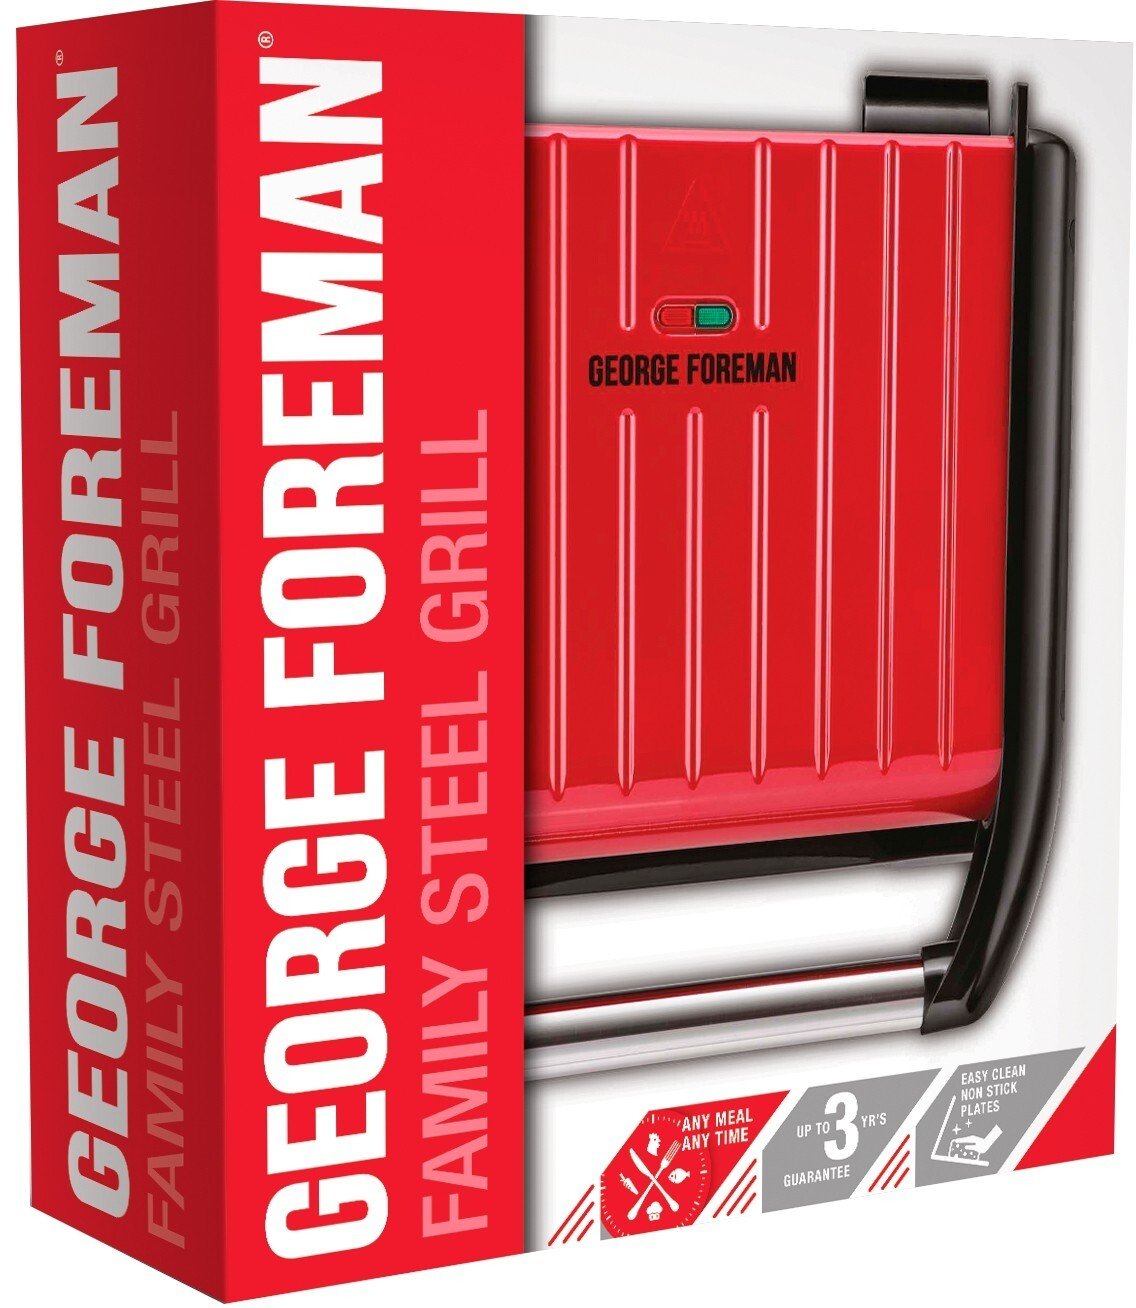 Електрогриль George Foreman 25040-56 Family Steel Grill характеристики - фотографія 7